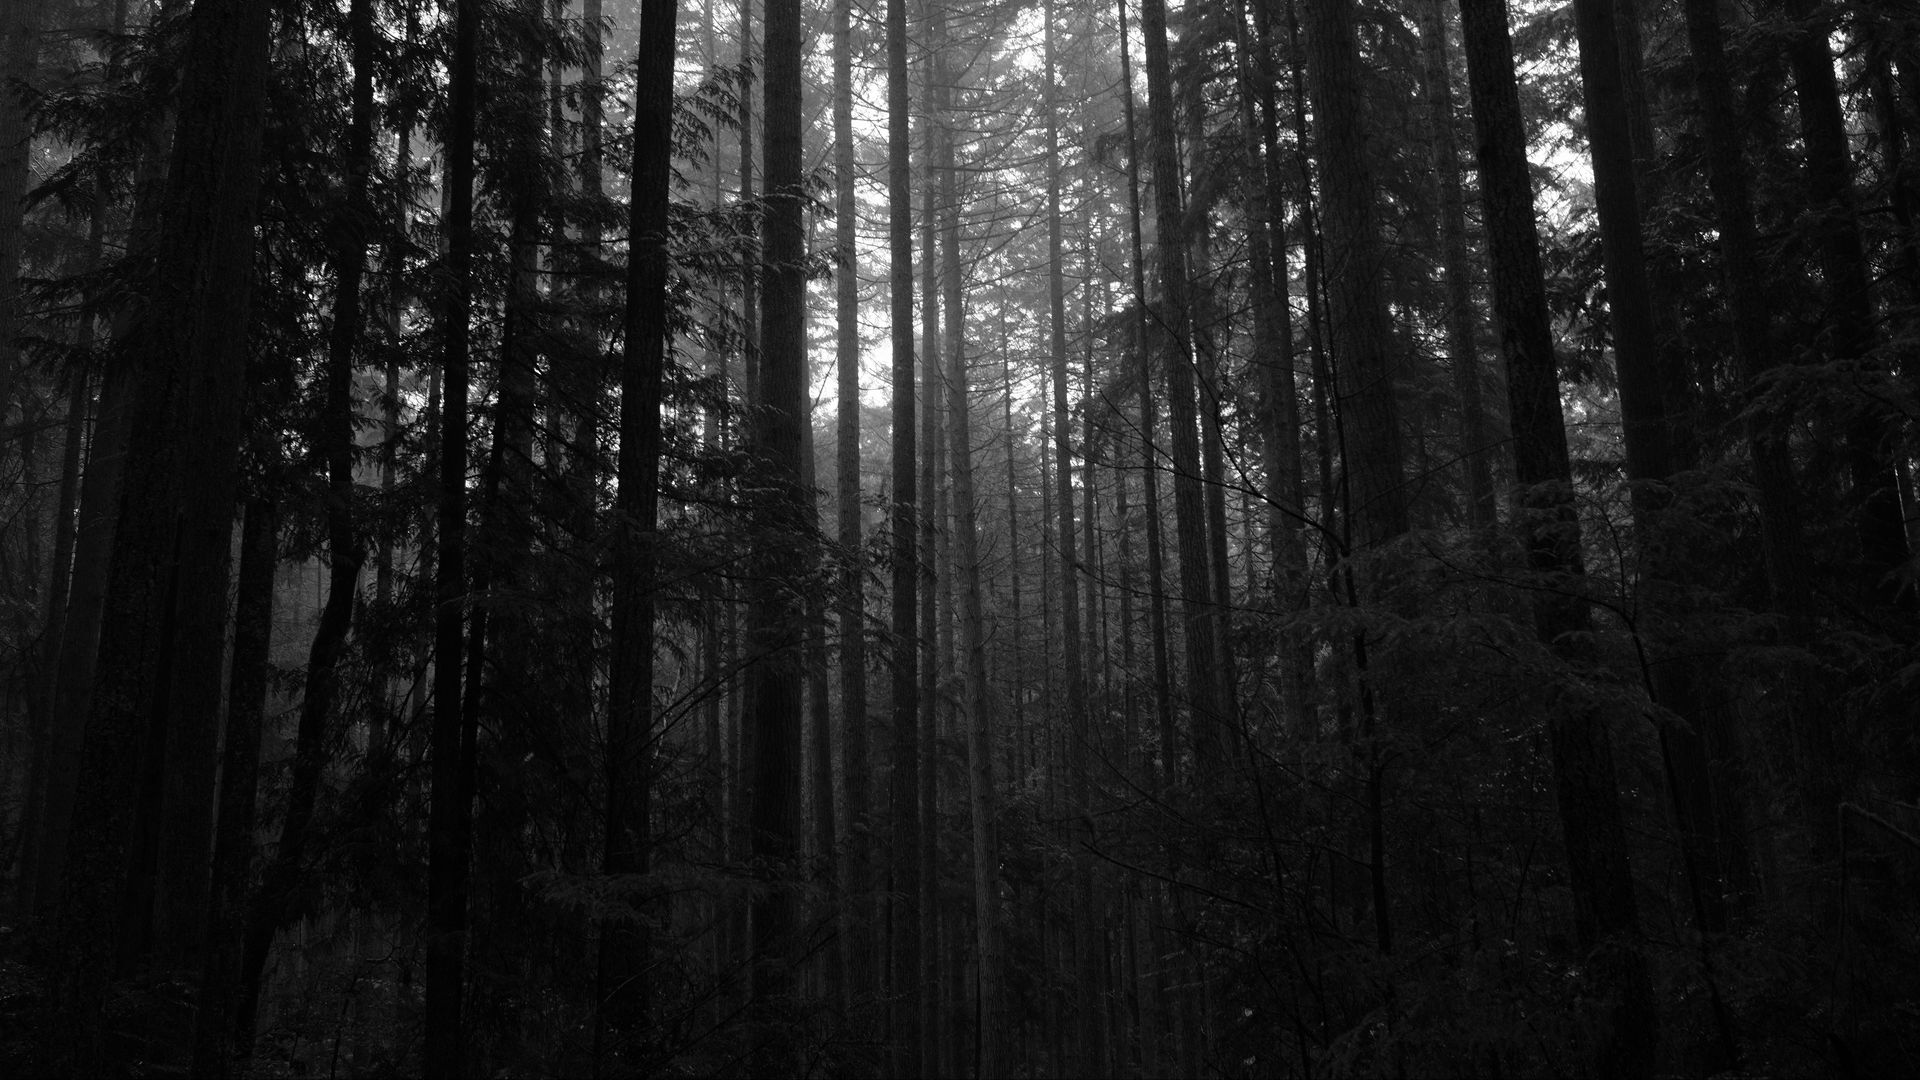 Download wallpaper 1920x1080 trees, forest, dark, trunks full hd, hdtv ...